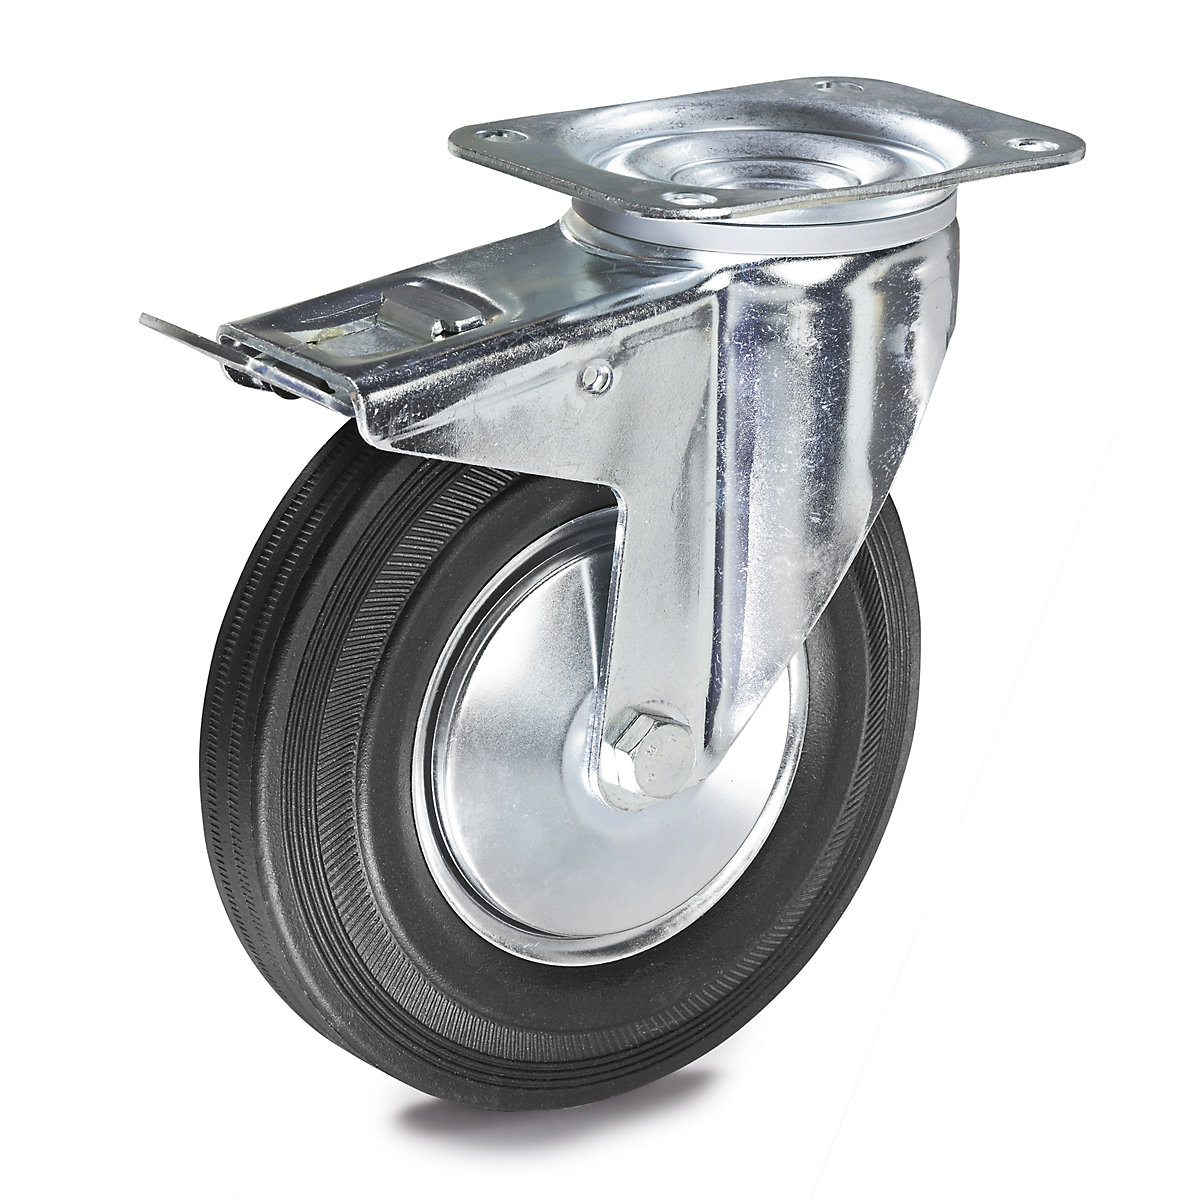 Pneu de borracha maciça – Proroll, Ø x largura da roda 80 x 25 mm, roda orientável com travão duplo-4